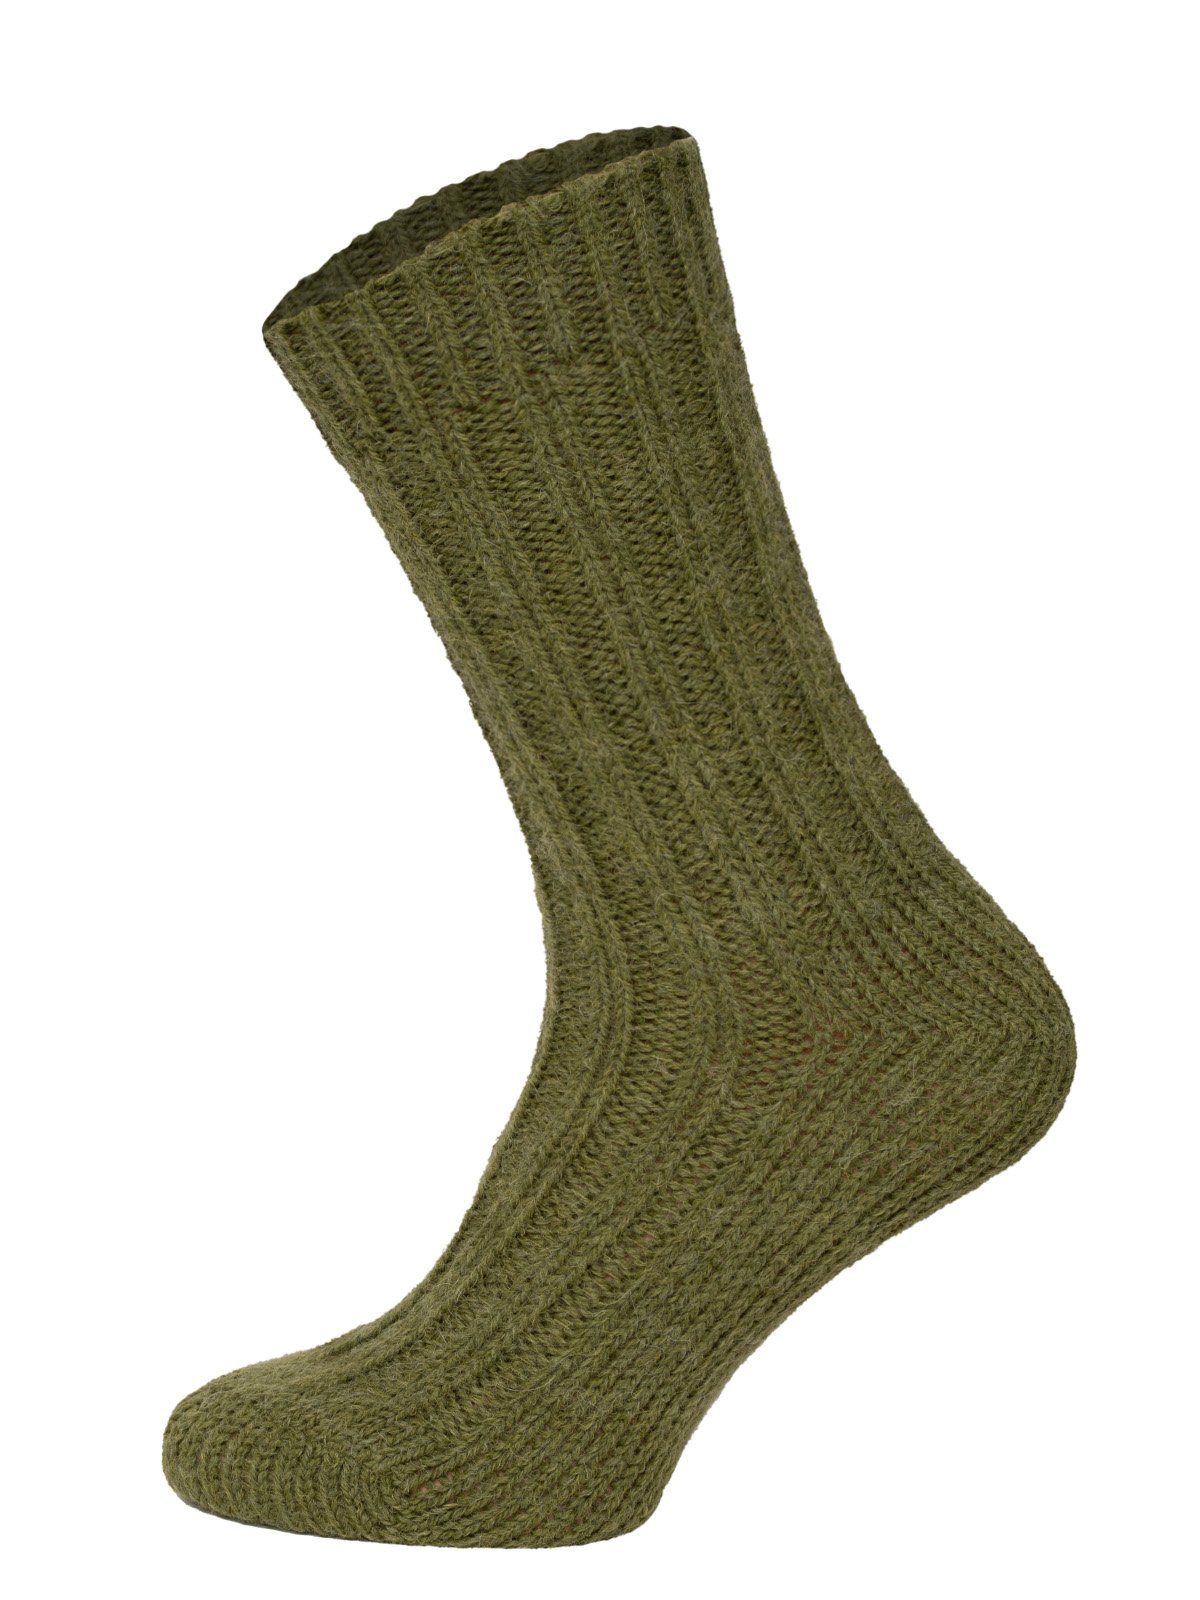 HomeOfSocks Socken Bunte Socken mit Umschlag mit Wolle und Alpakawolle Strapazierfähige und warme Socken mit 40% Wollanteil und Alpakawolle Olive